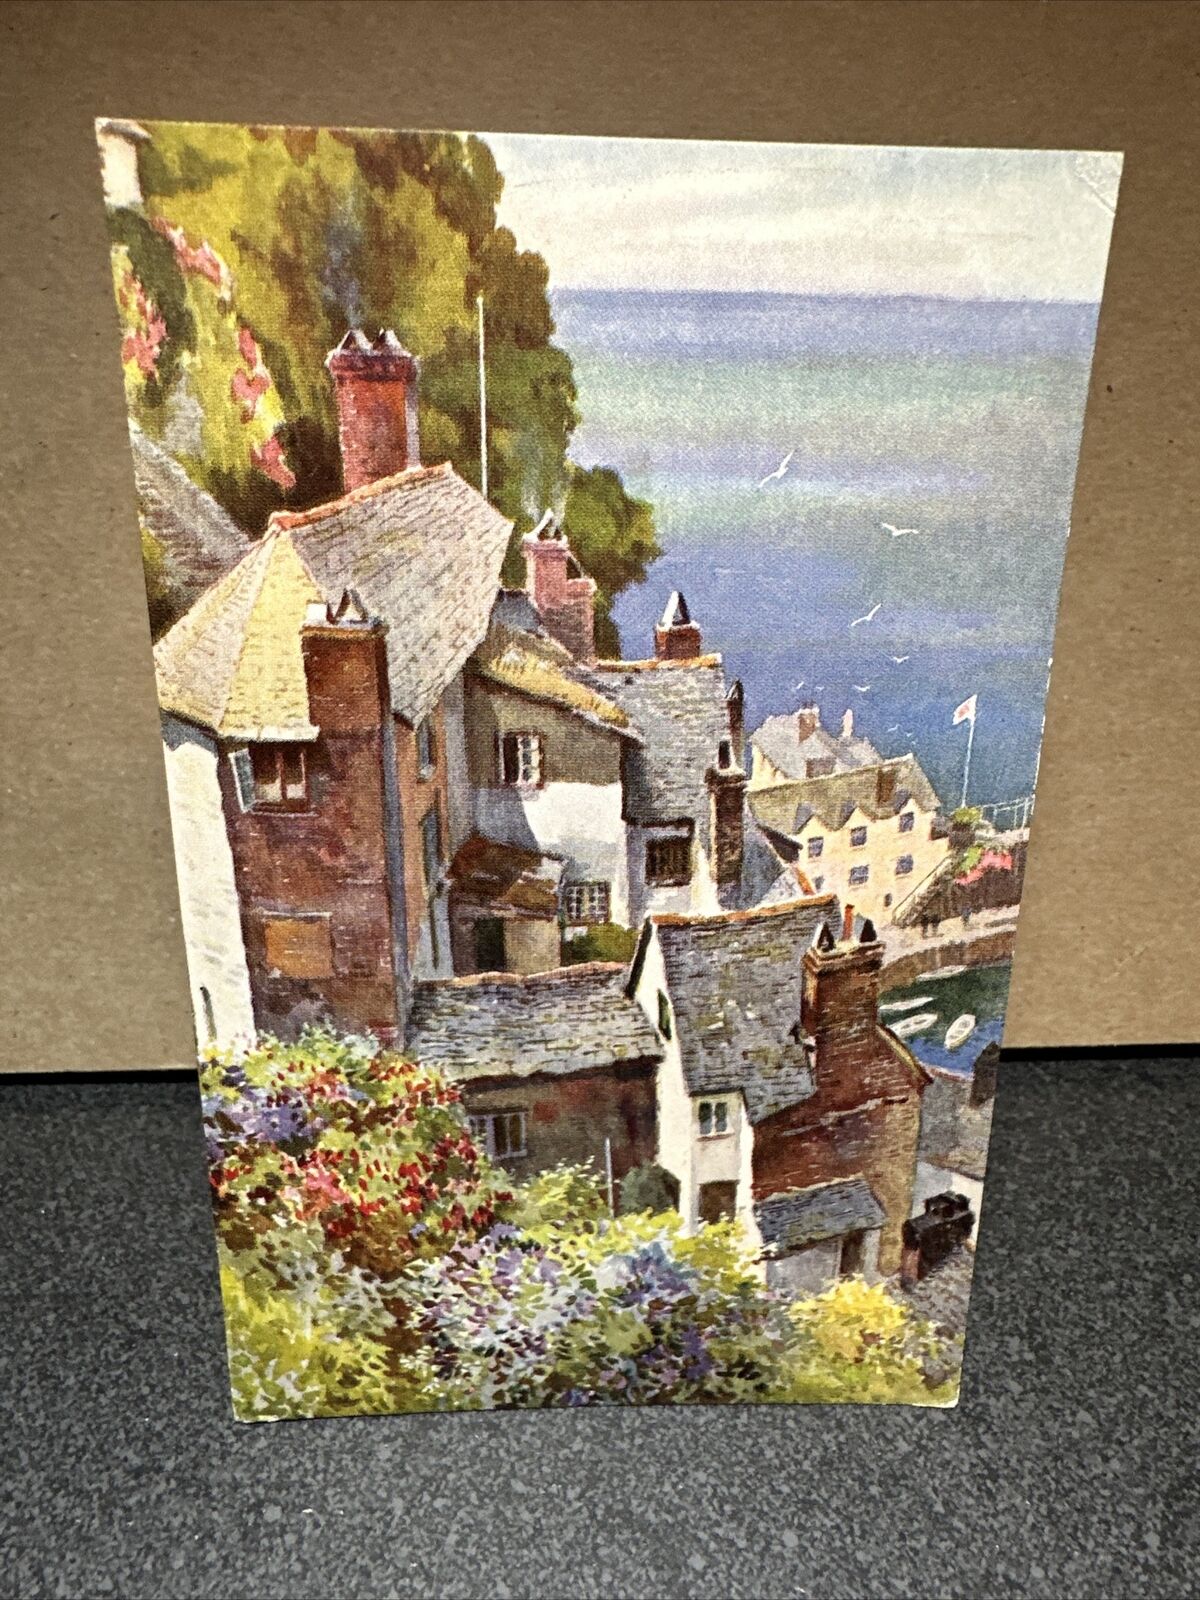 Cliff cottages, postcard